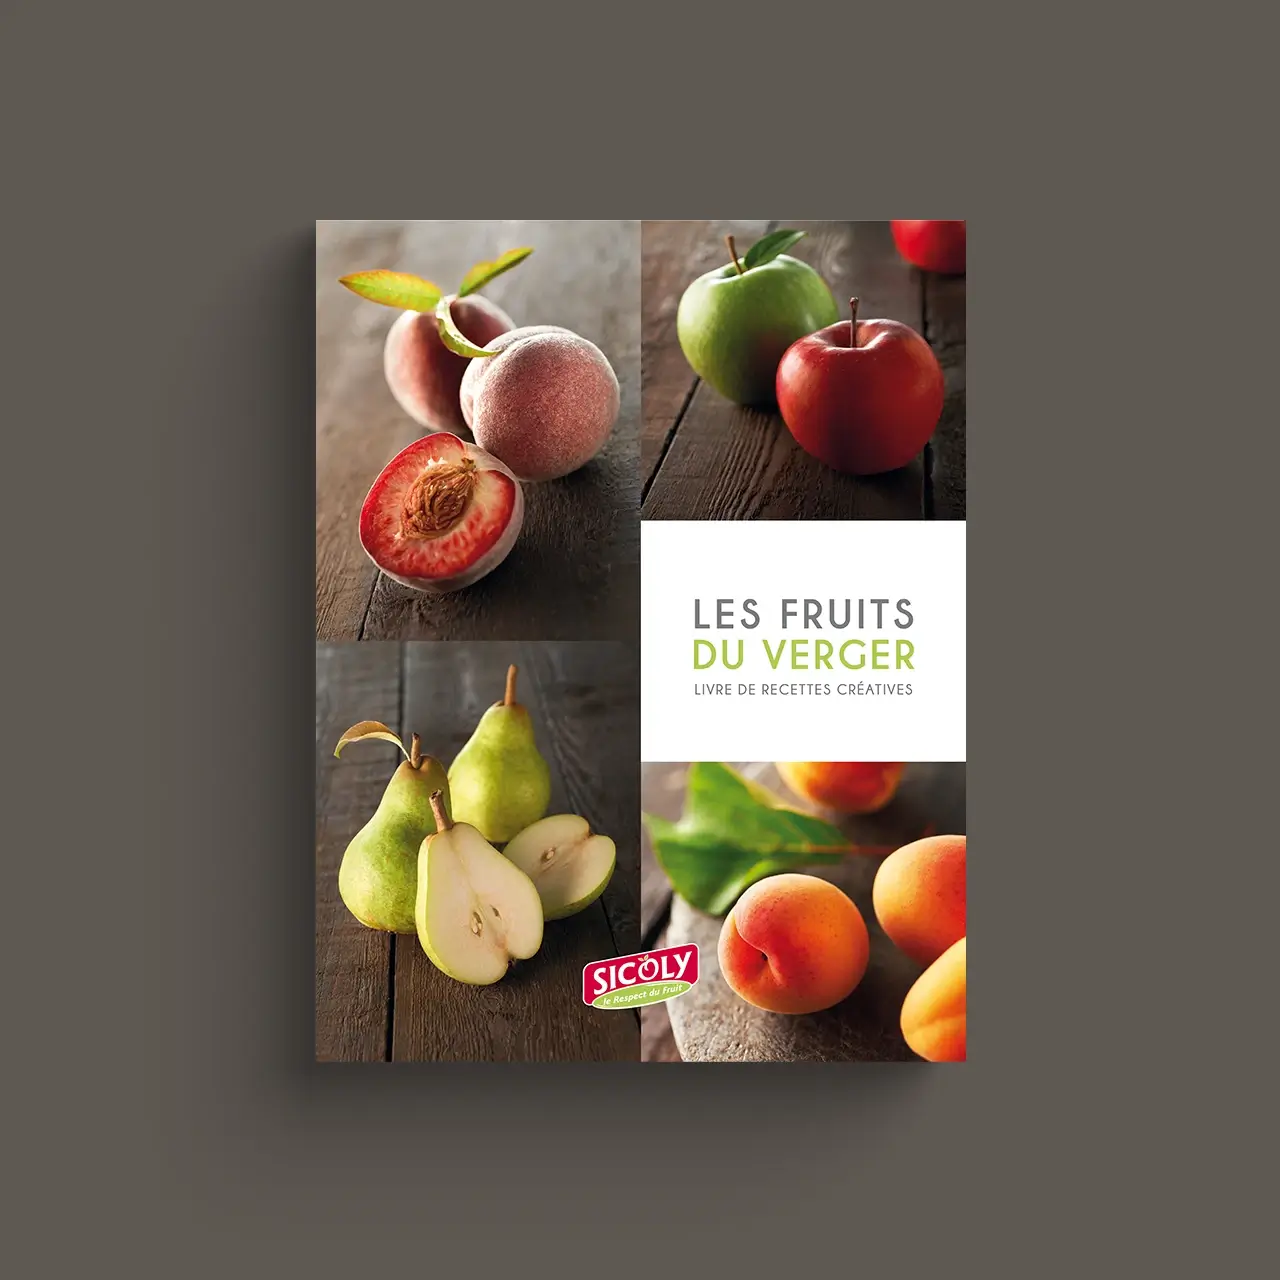 Les Fruits du Verger - Livre de recettes créatives par Sicoly, coopérative, producteur de fruits frais, fournisseur de purées surgelées et fruits transformés